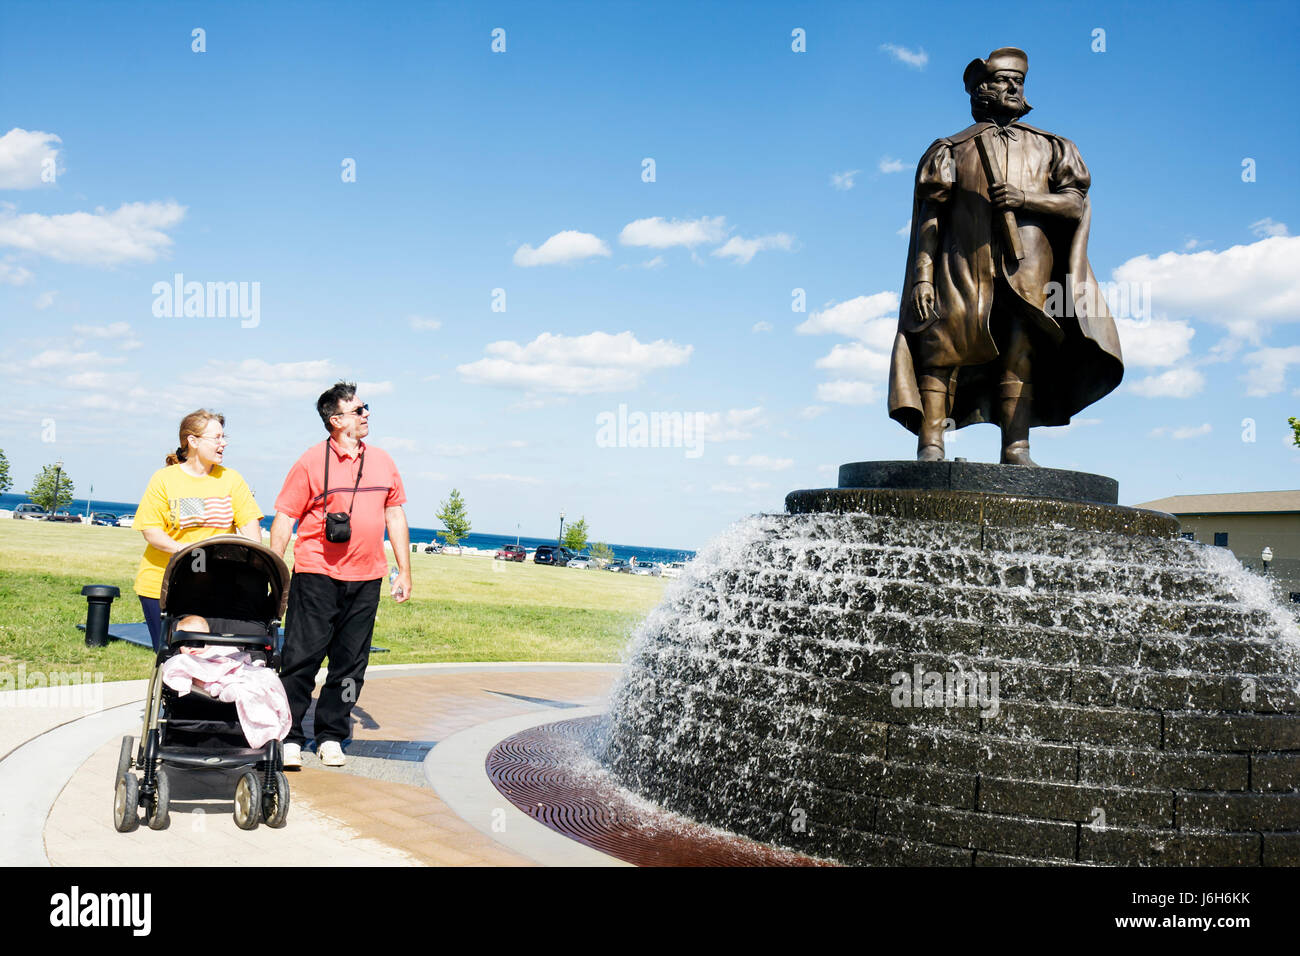 Wisconsin Kenosha County,Kenosha,Harbour Park,Christophe Colomb,statue,fontaine publique,homme hommes,femme femmes,bébé bébés enfants,fa Banque D'Images